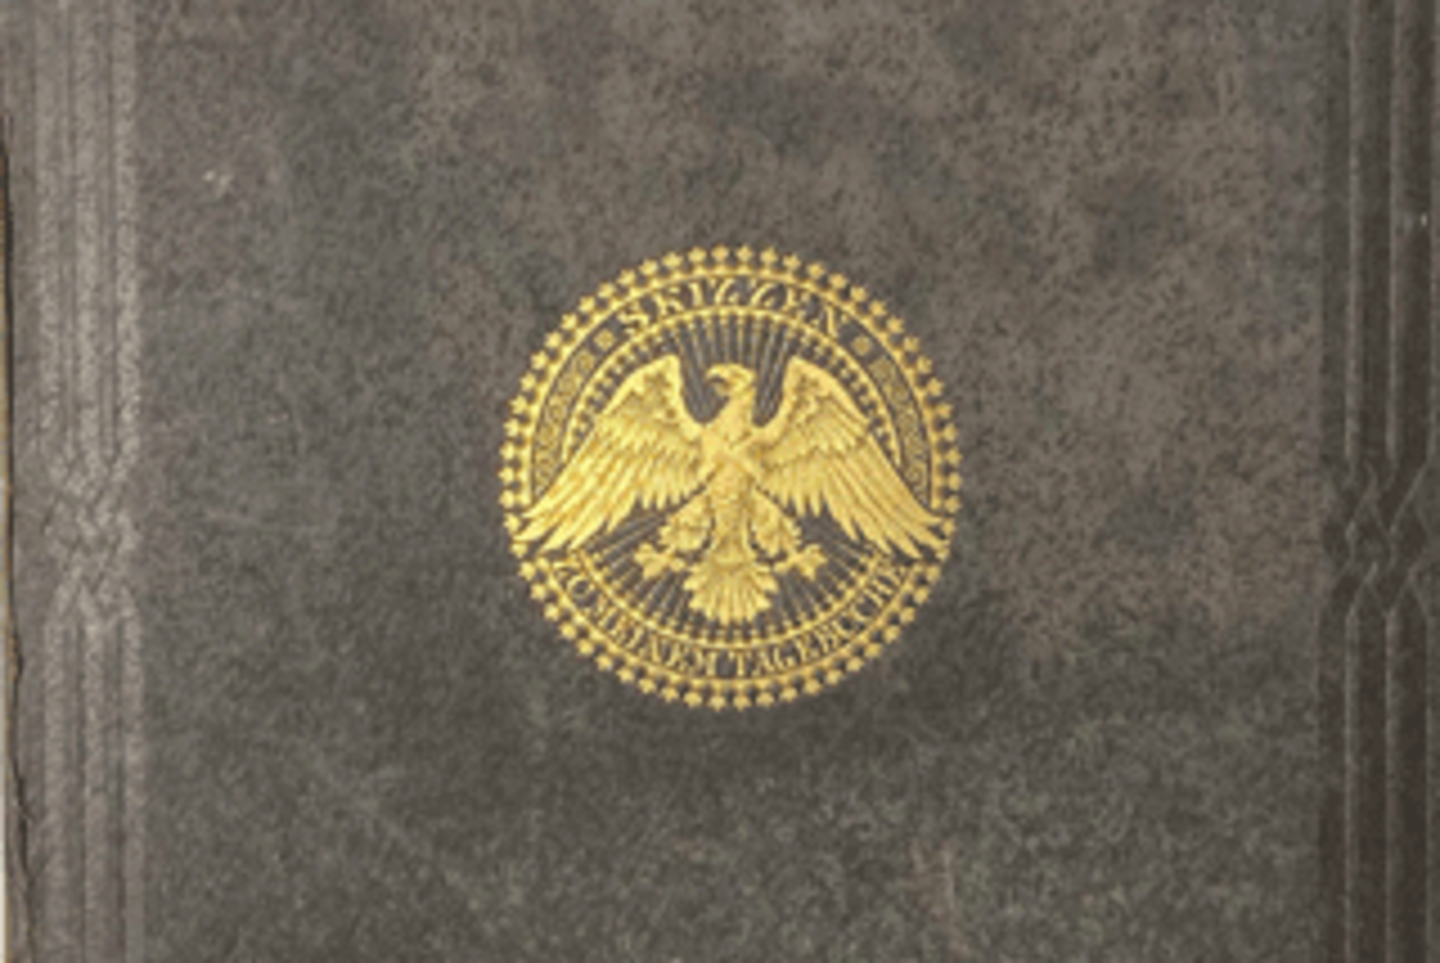 Foto des goldenen Wappens von "Skizzen zu dem Tagebuche von Adalbert Prinz von Preussen".